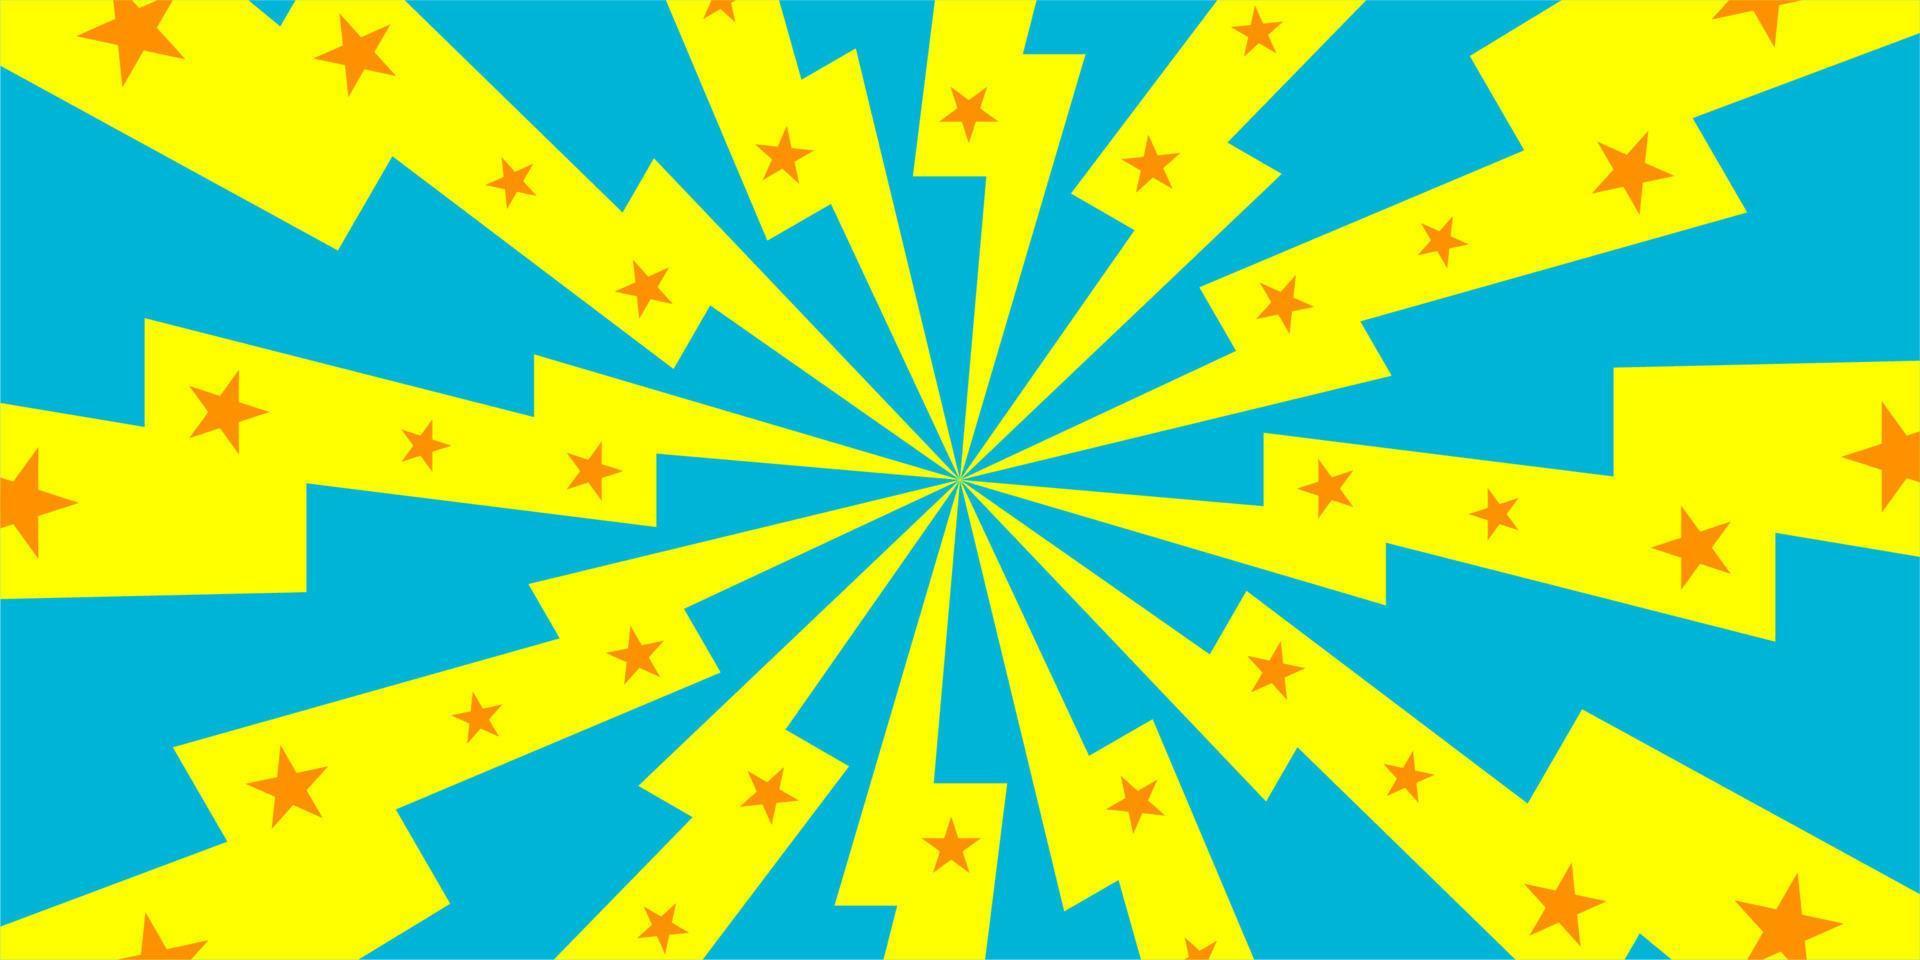 blauer und gelber hintergrund der komischen karikatur mit stern und donner vektor